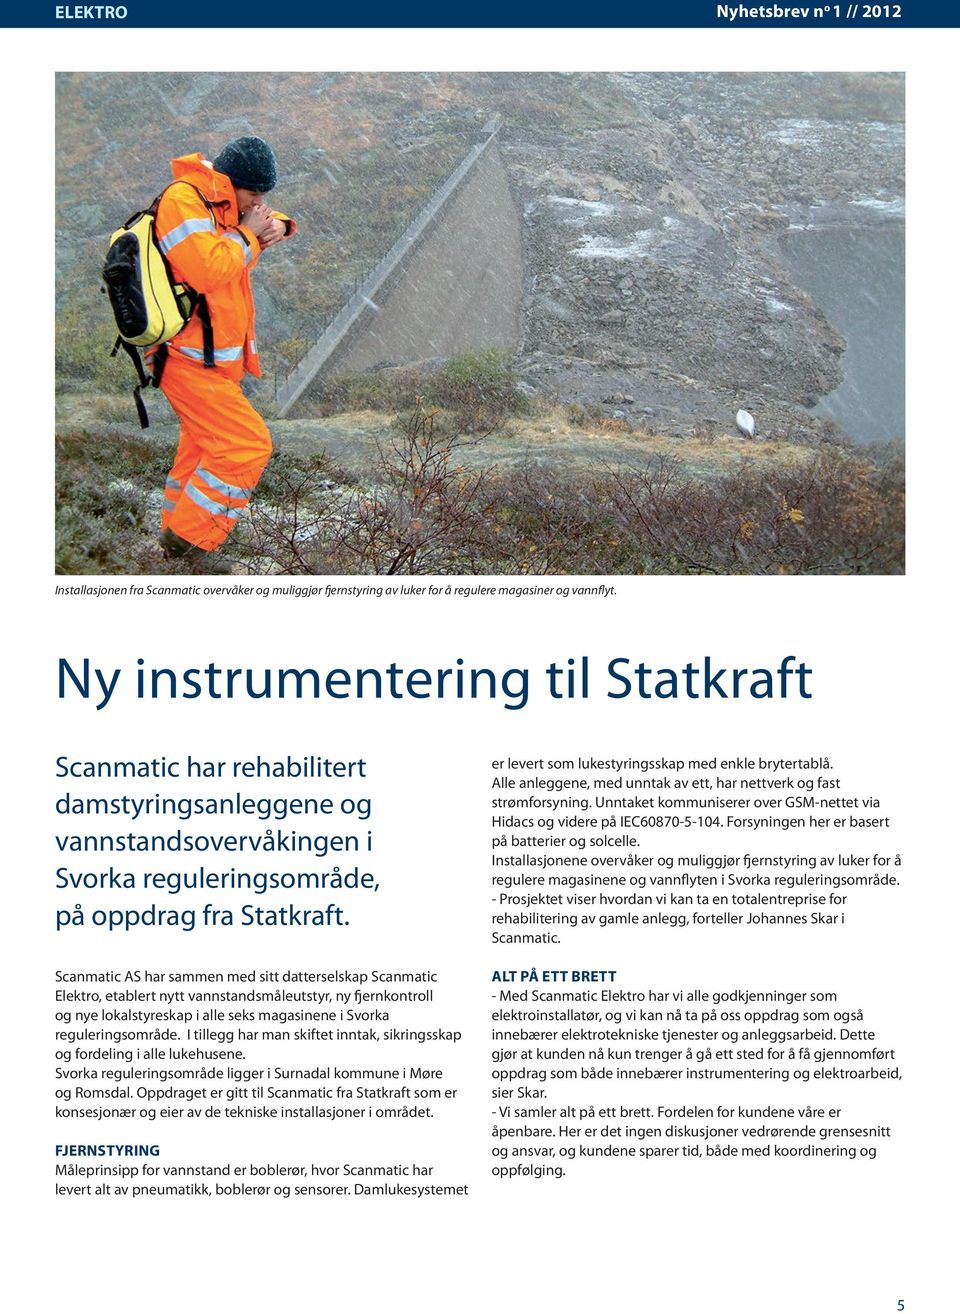 Scanmatic AS har sammen med sitt datterselskap Scanmatic Elektro, etablert nytt vannstandsmåleutstyr, ny fjernkontroll og nye lokalstyreskap i alle seks magasinene i Svorka reguleringsområde.